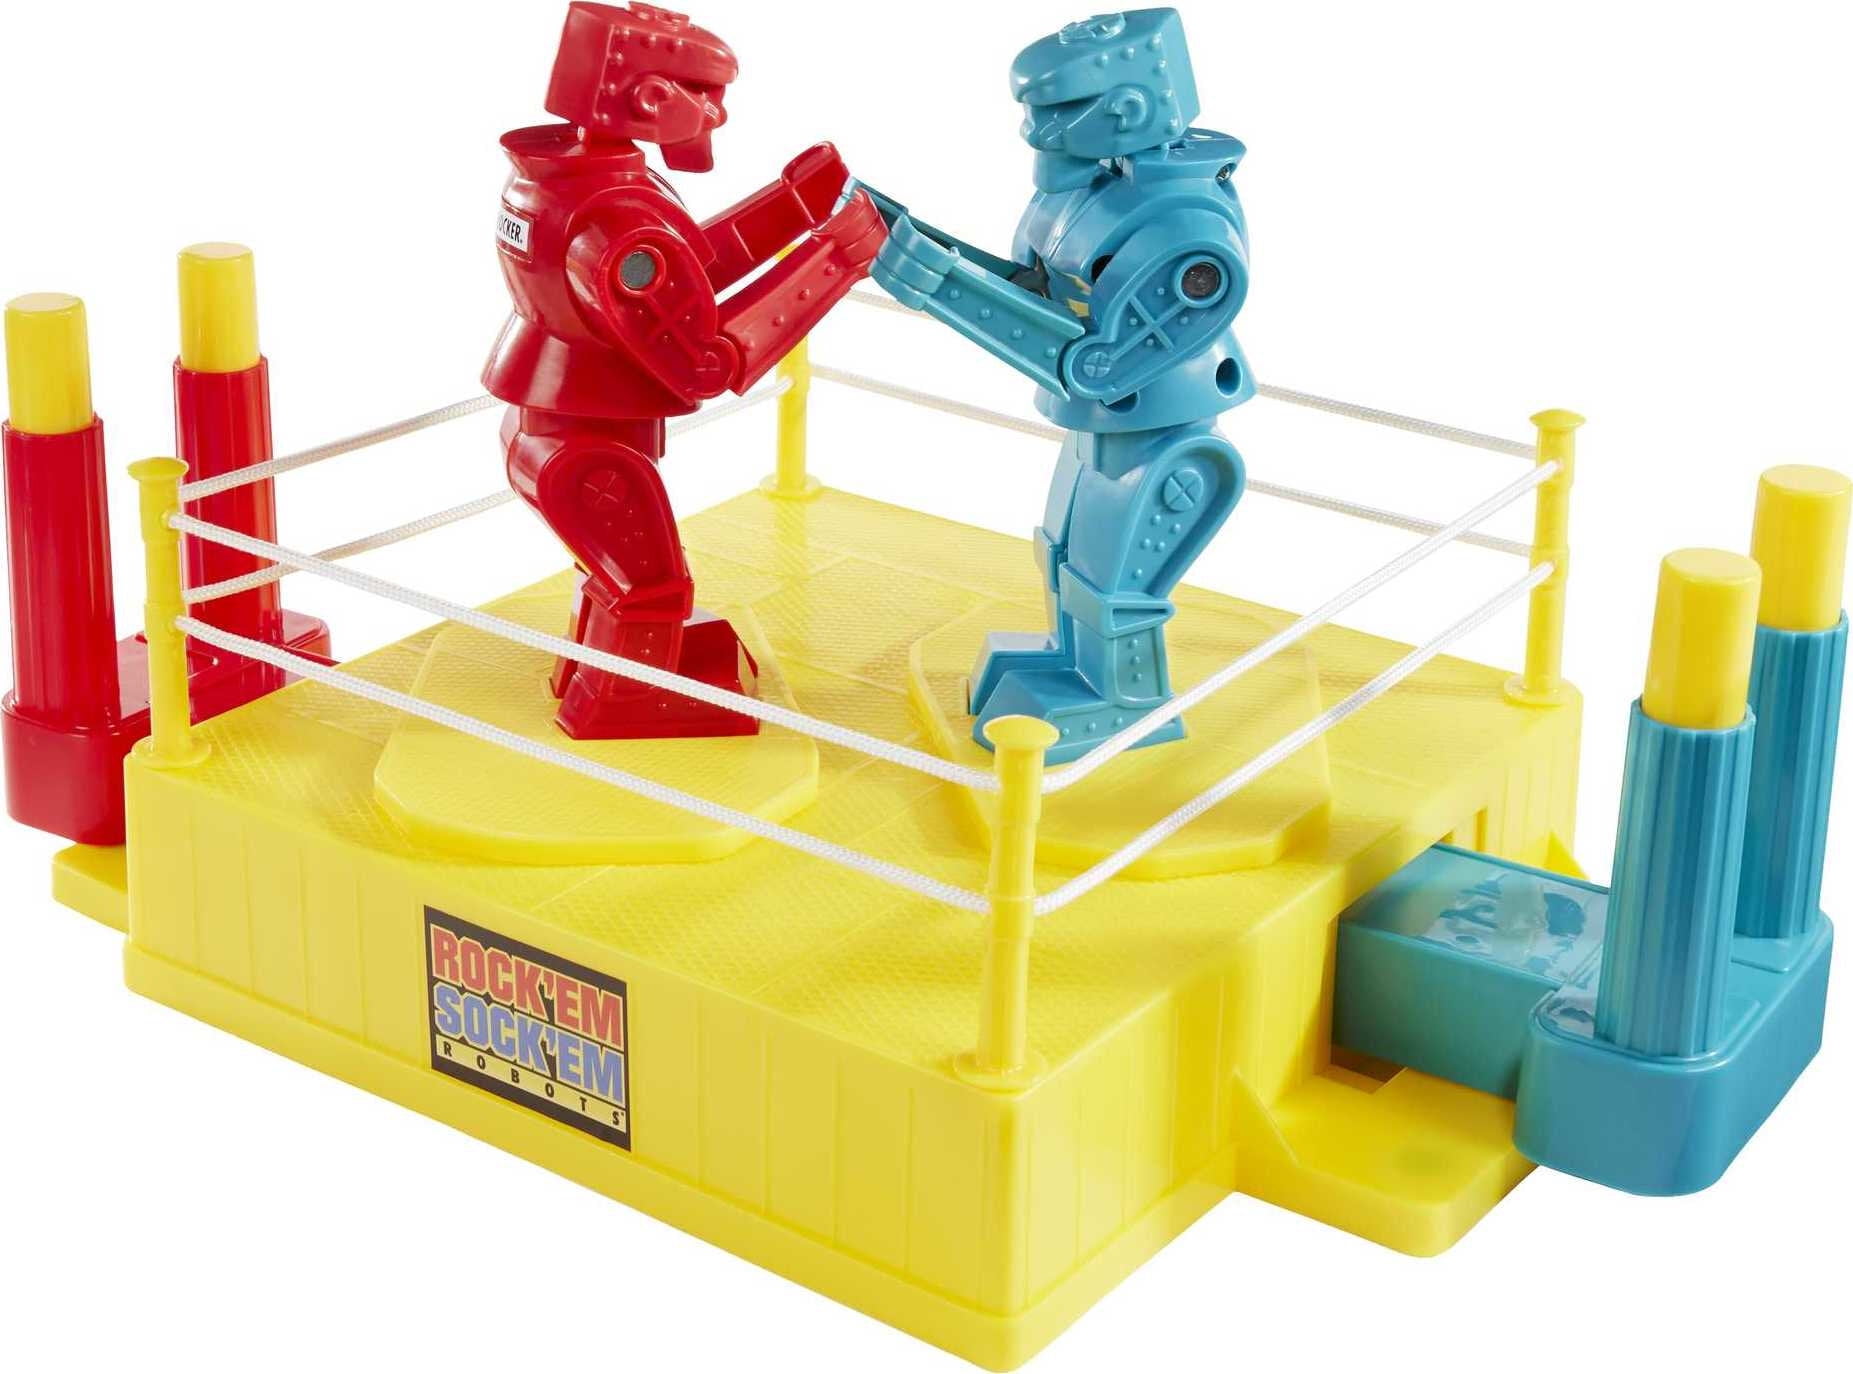 Rock 'Em Sock 'Em Robots Kids Game, Fighting Robots with Red Rocker & Blue Bomber